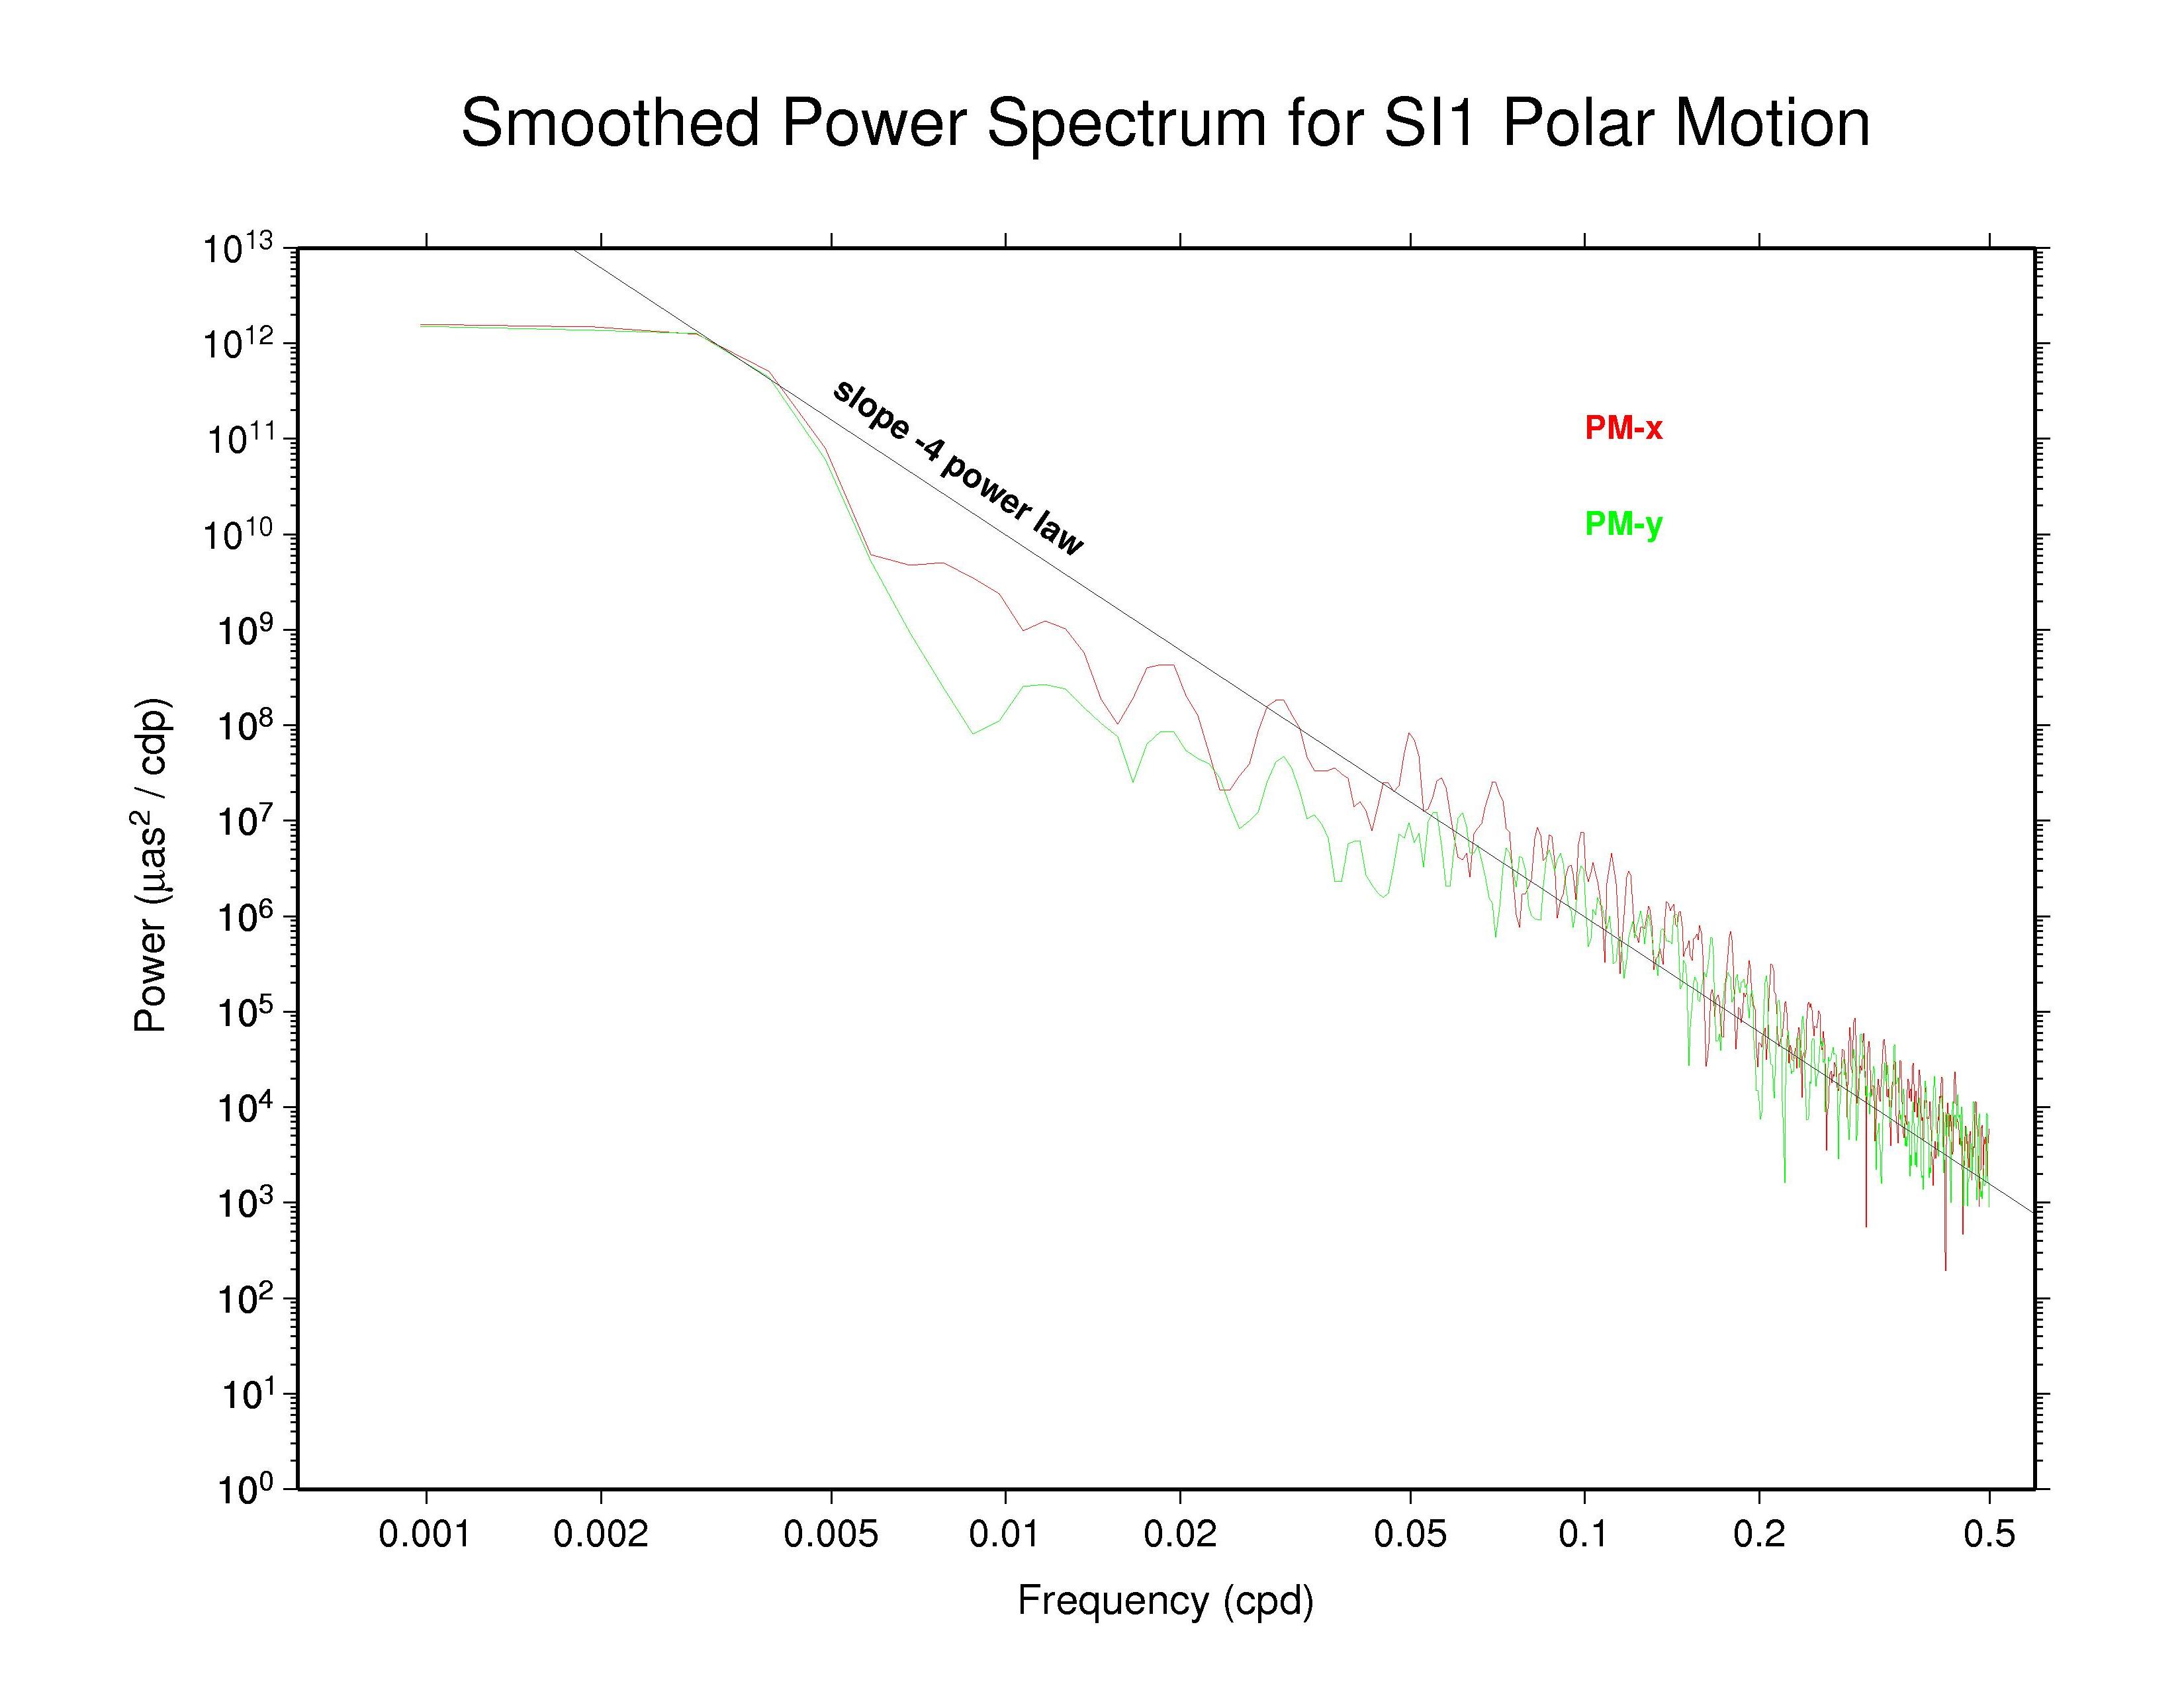 SIO polar motion spectra